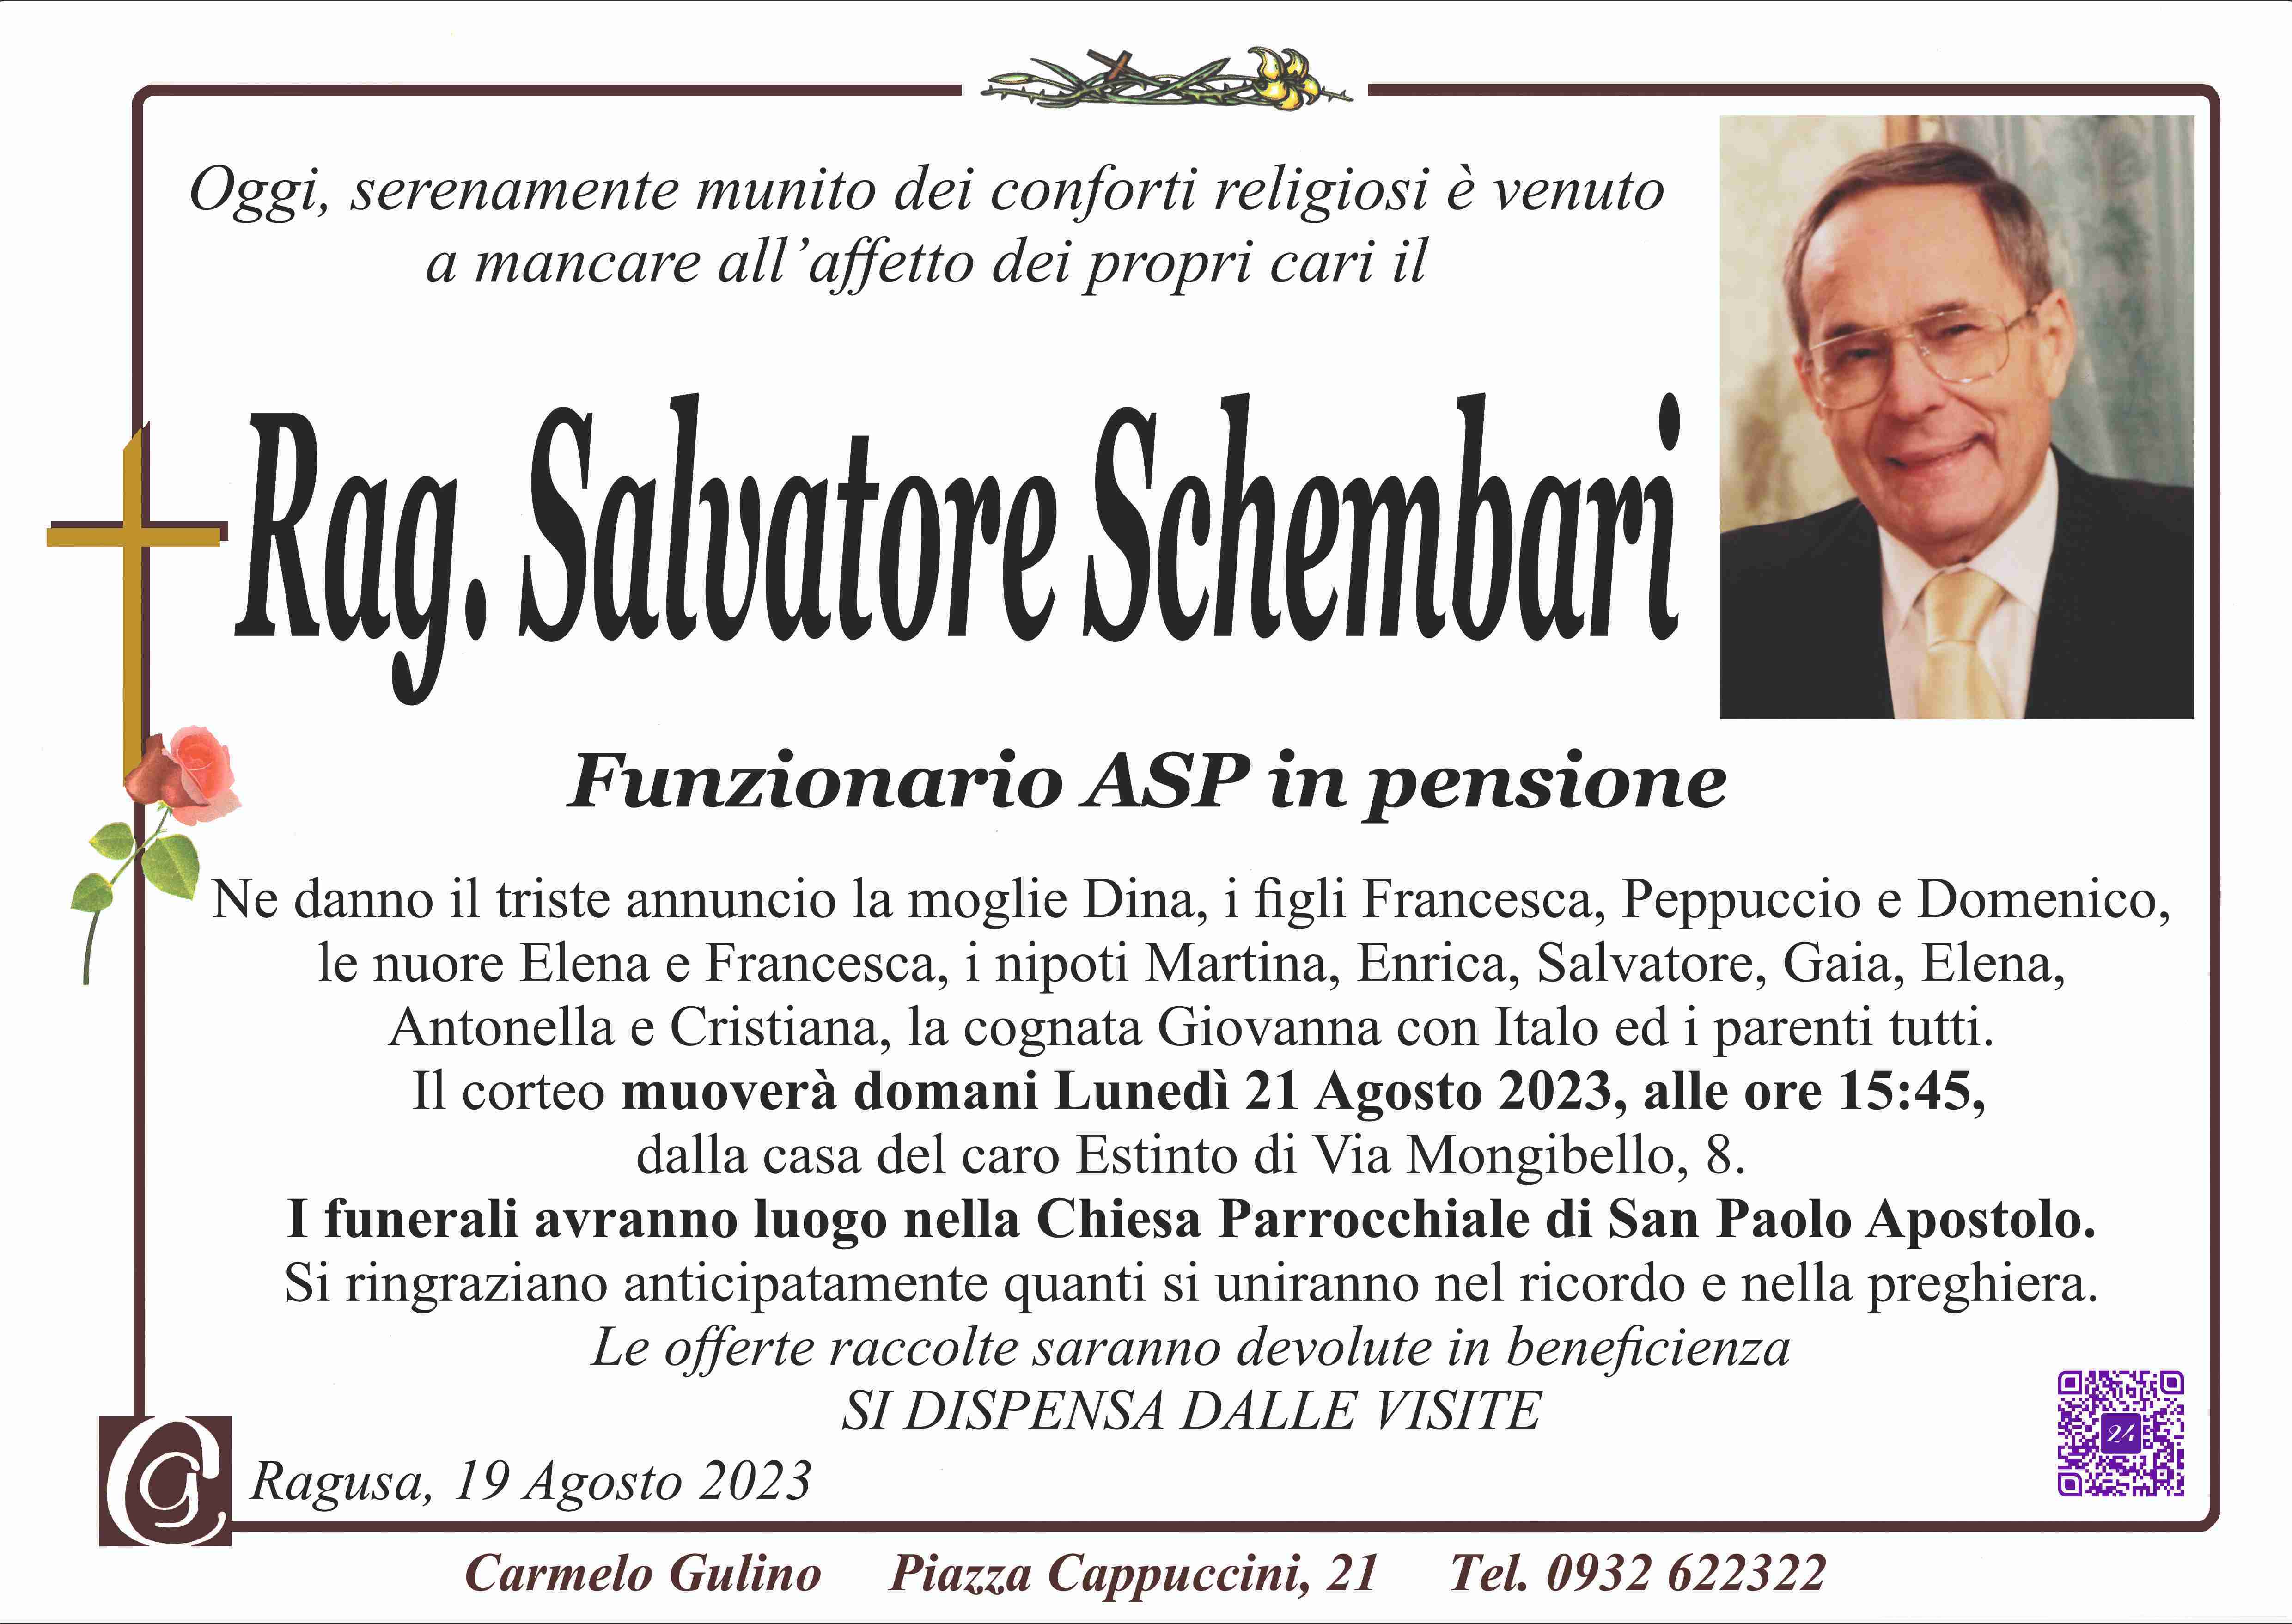 Salvatore Schembari